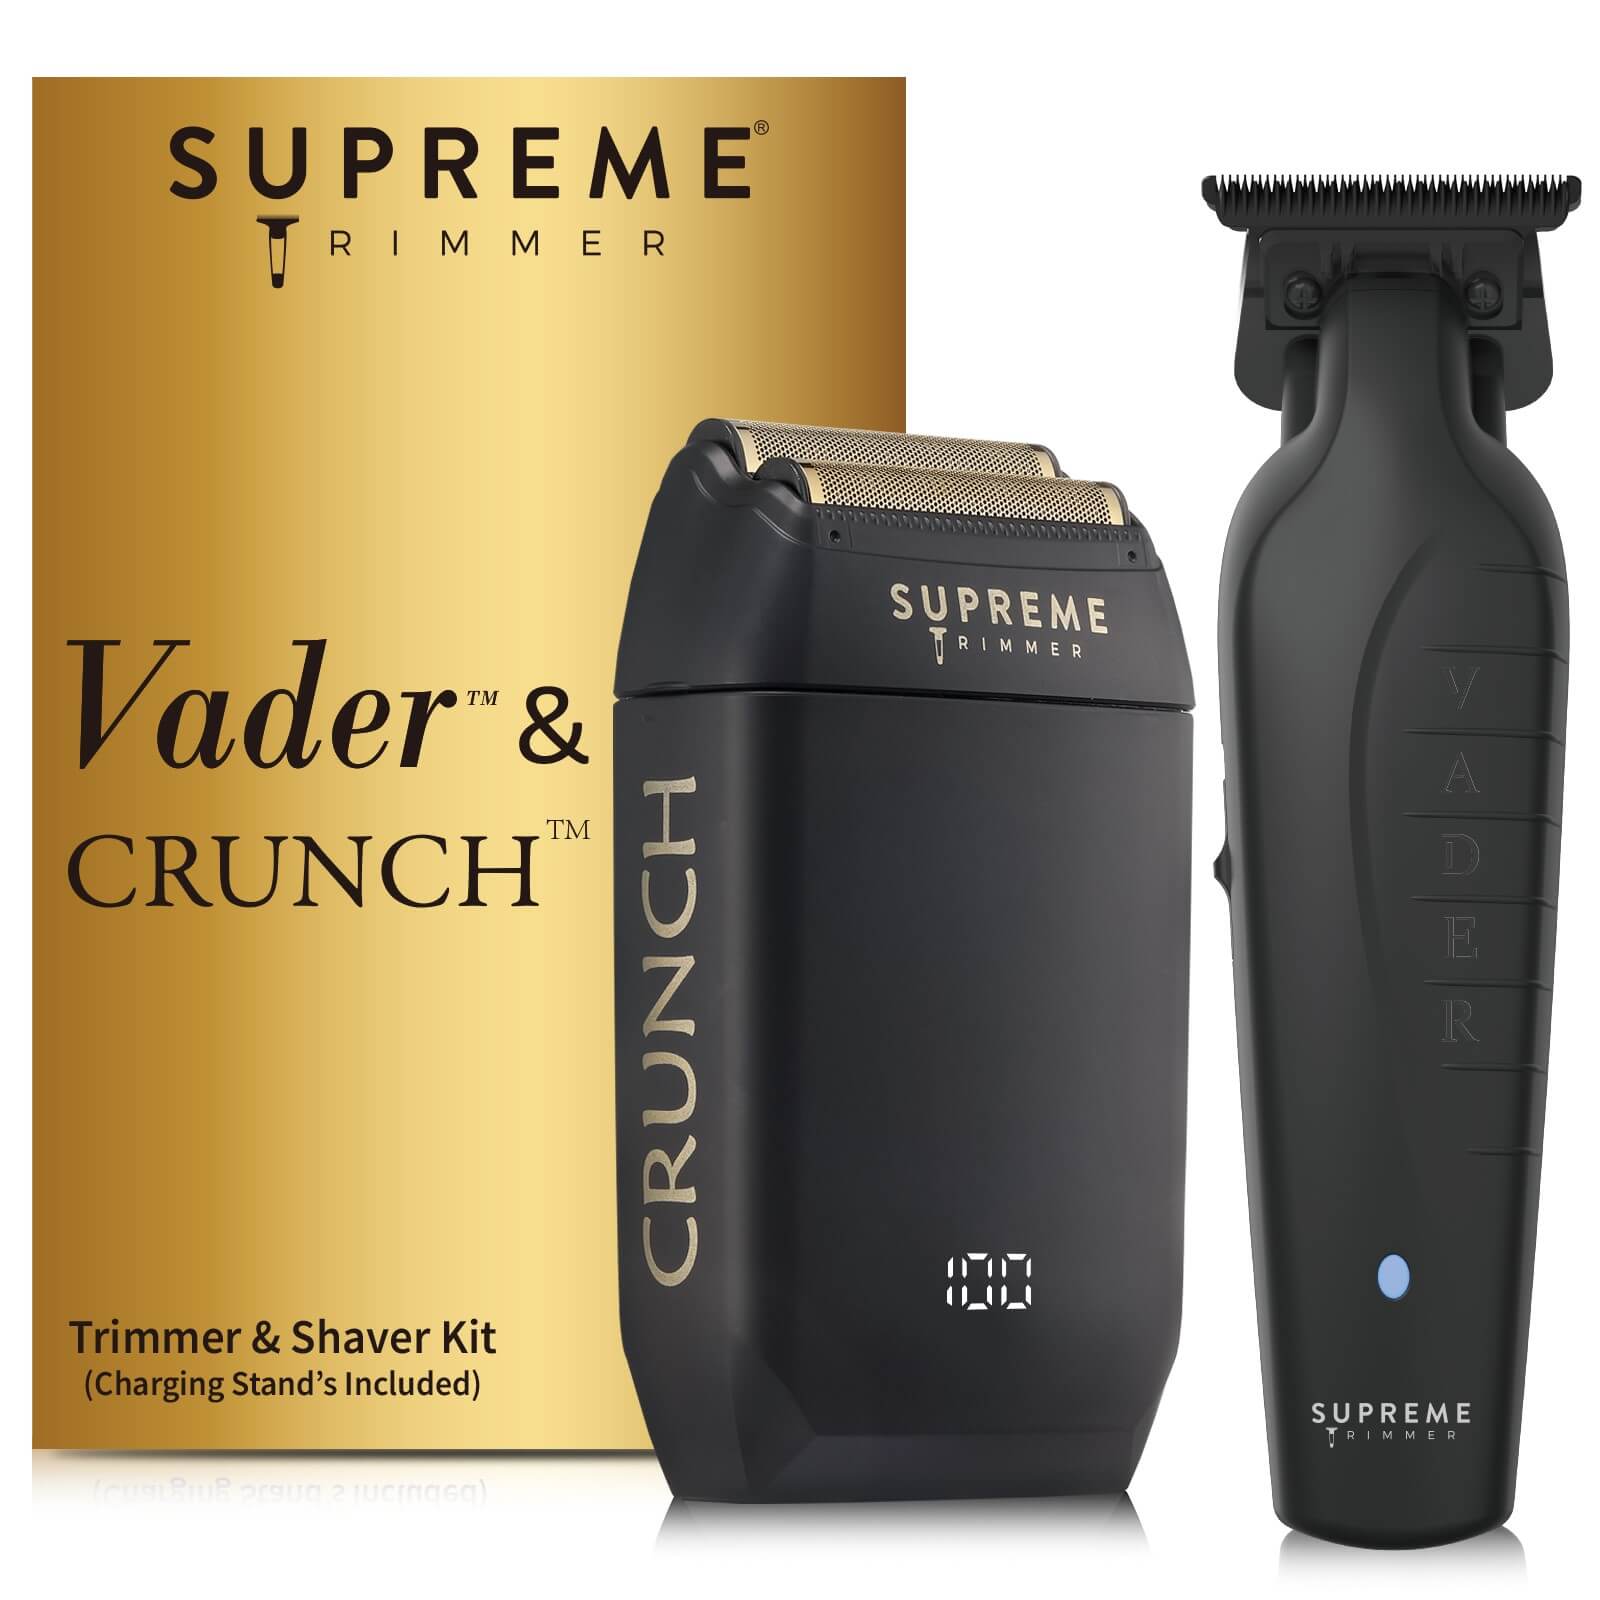 Vader™ Trimmer & Crunch™ Shaver Bundle - Hair trimmer and Electric shaver - Supreme Trimmer Mens Trimmer Grooming kit 